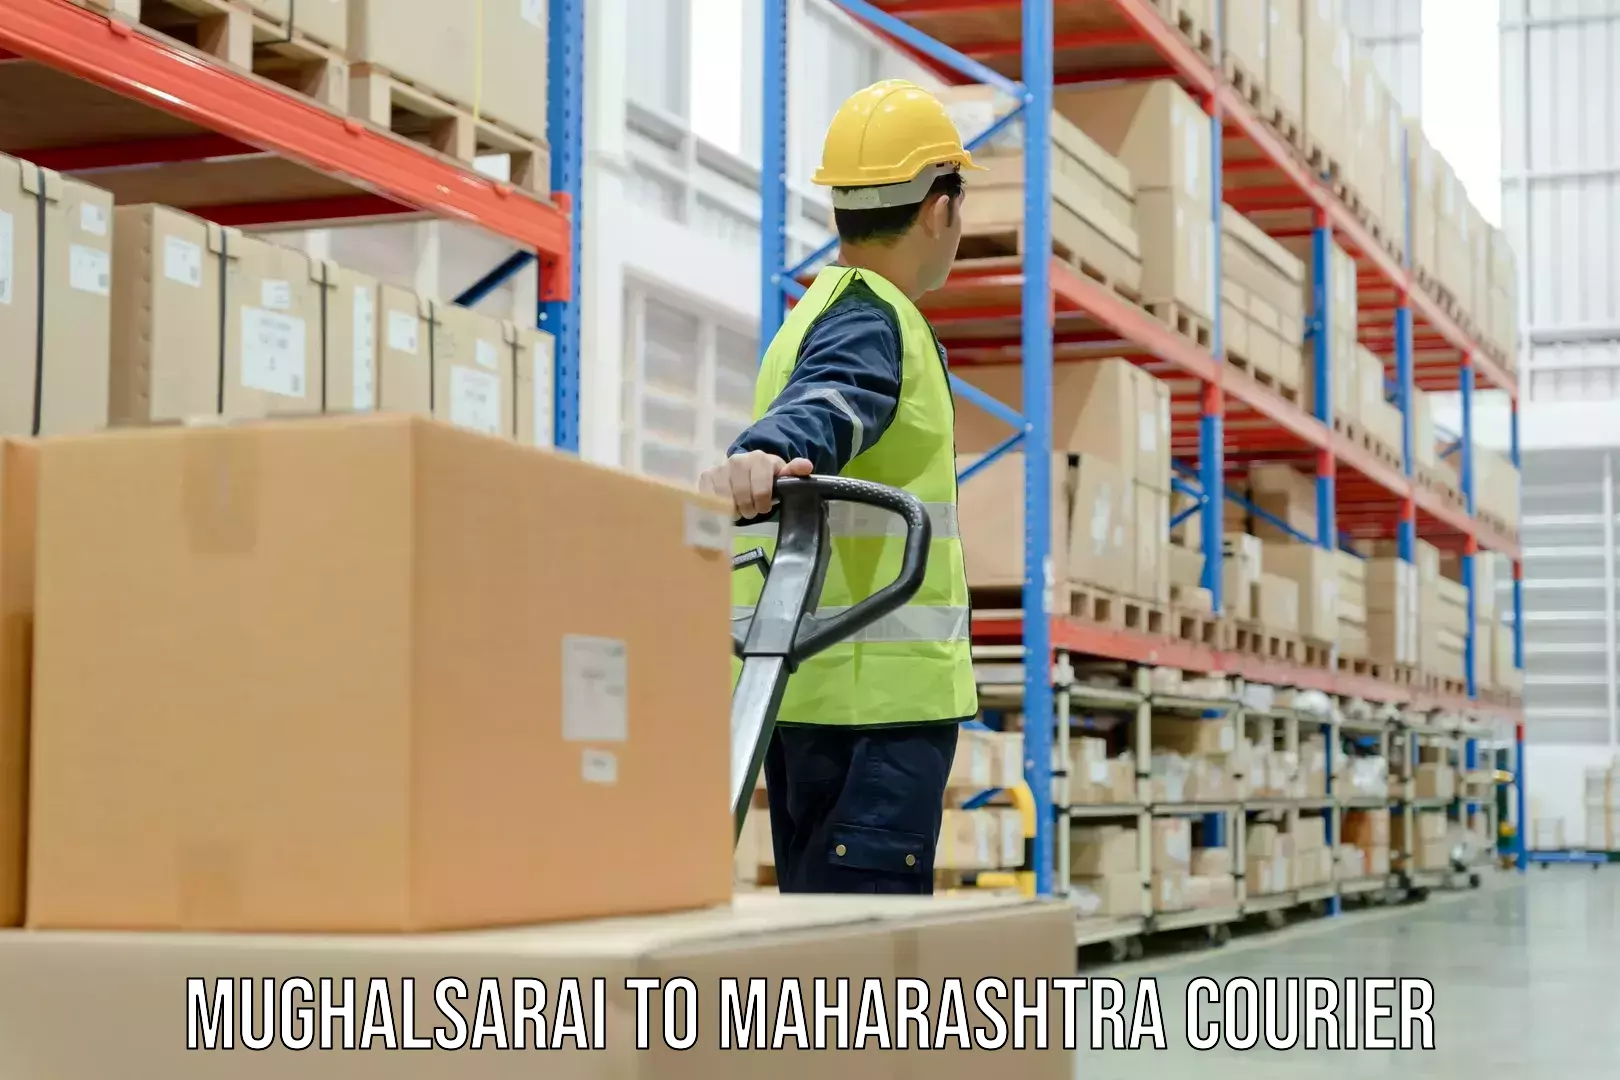 Pharmaceutical courier Mughalsarai to Maharashtra